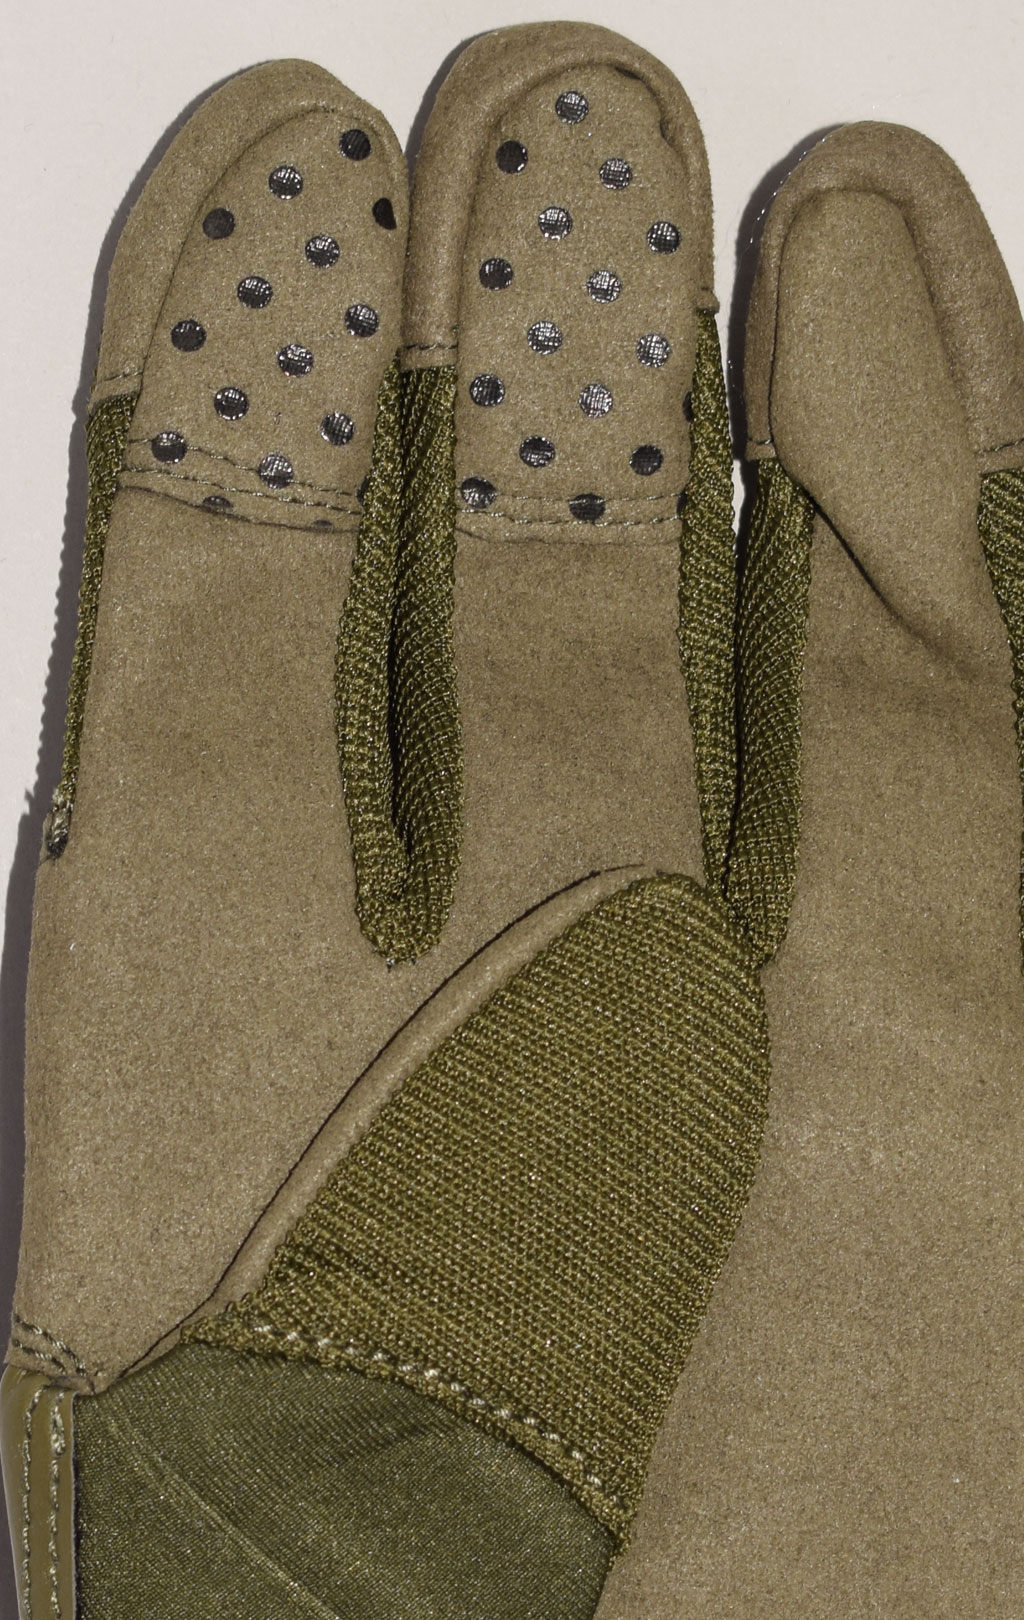 Перчатки тактические OK ASSAULT с пласт. защитой green 